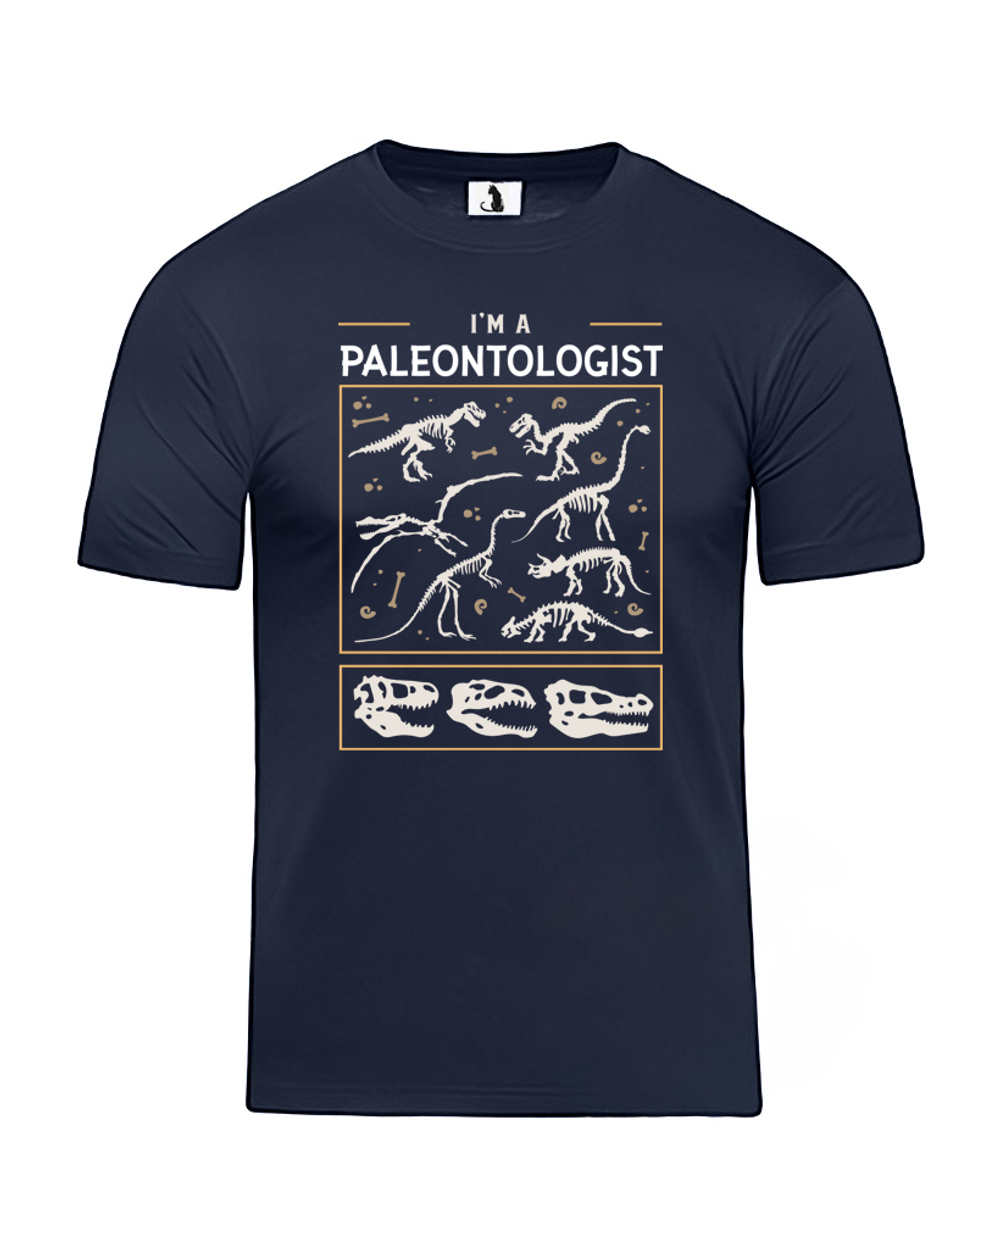 Футболка Я палеонтолог классическая прямая темно-синяя с цветным рисунком